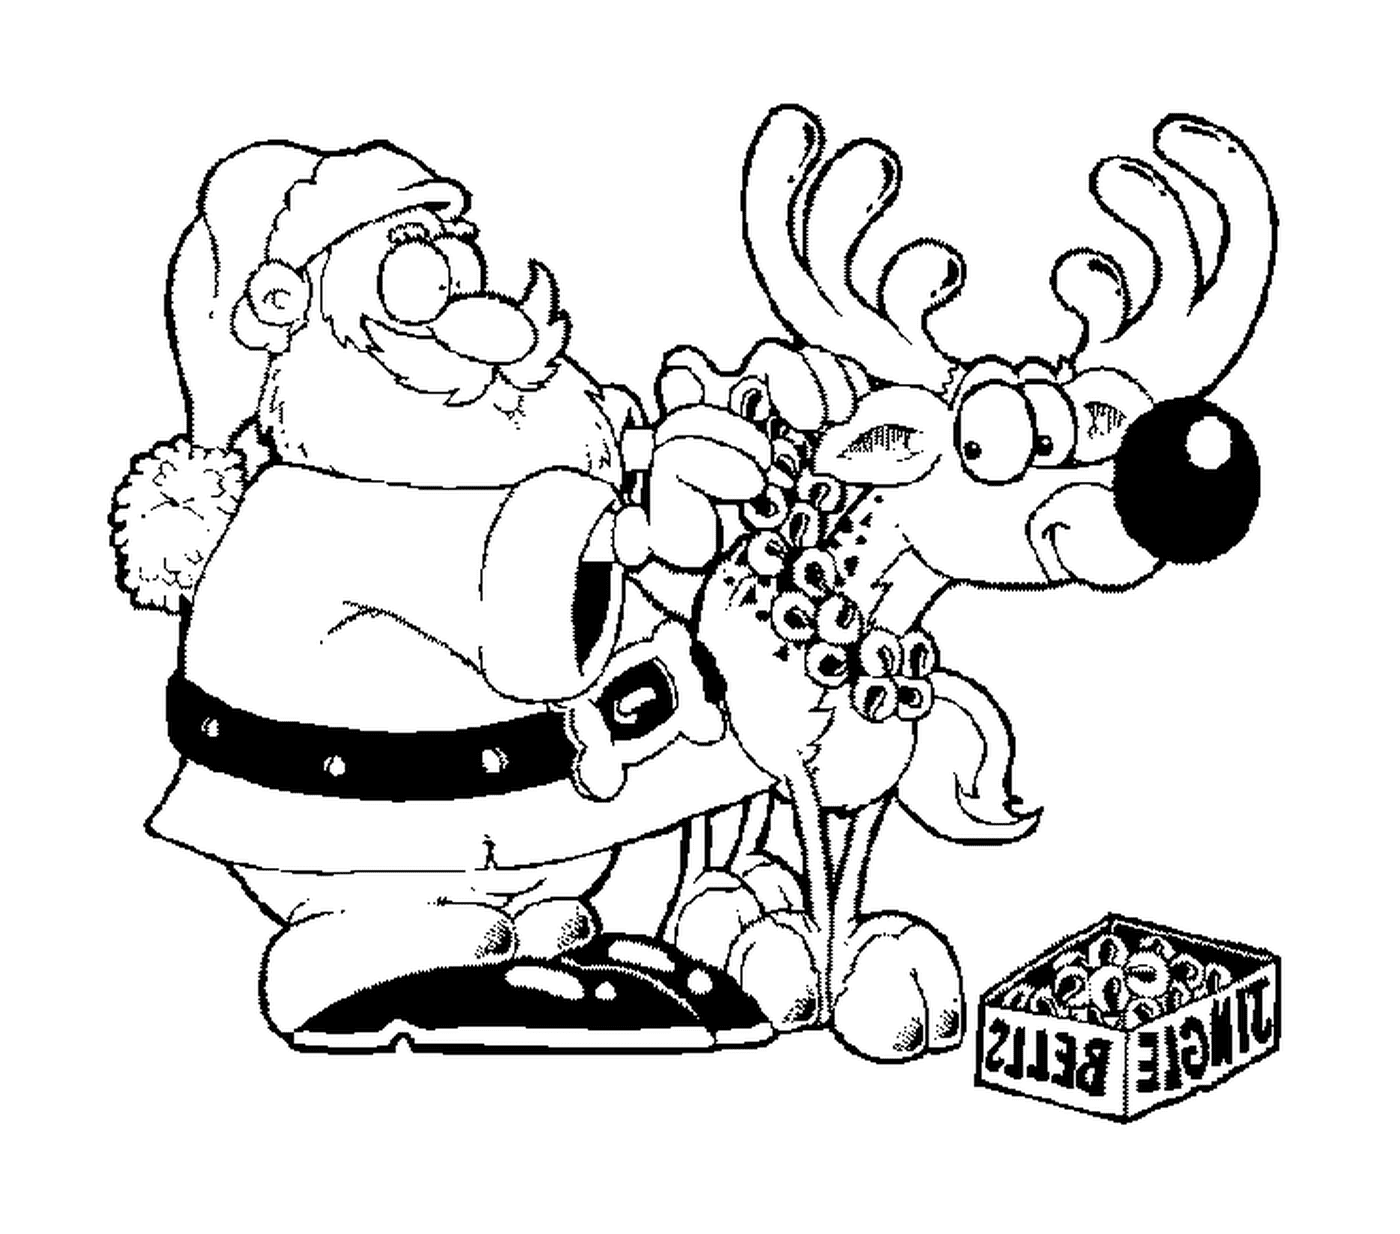   le père Noël accroche des clochettes à son renne 